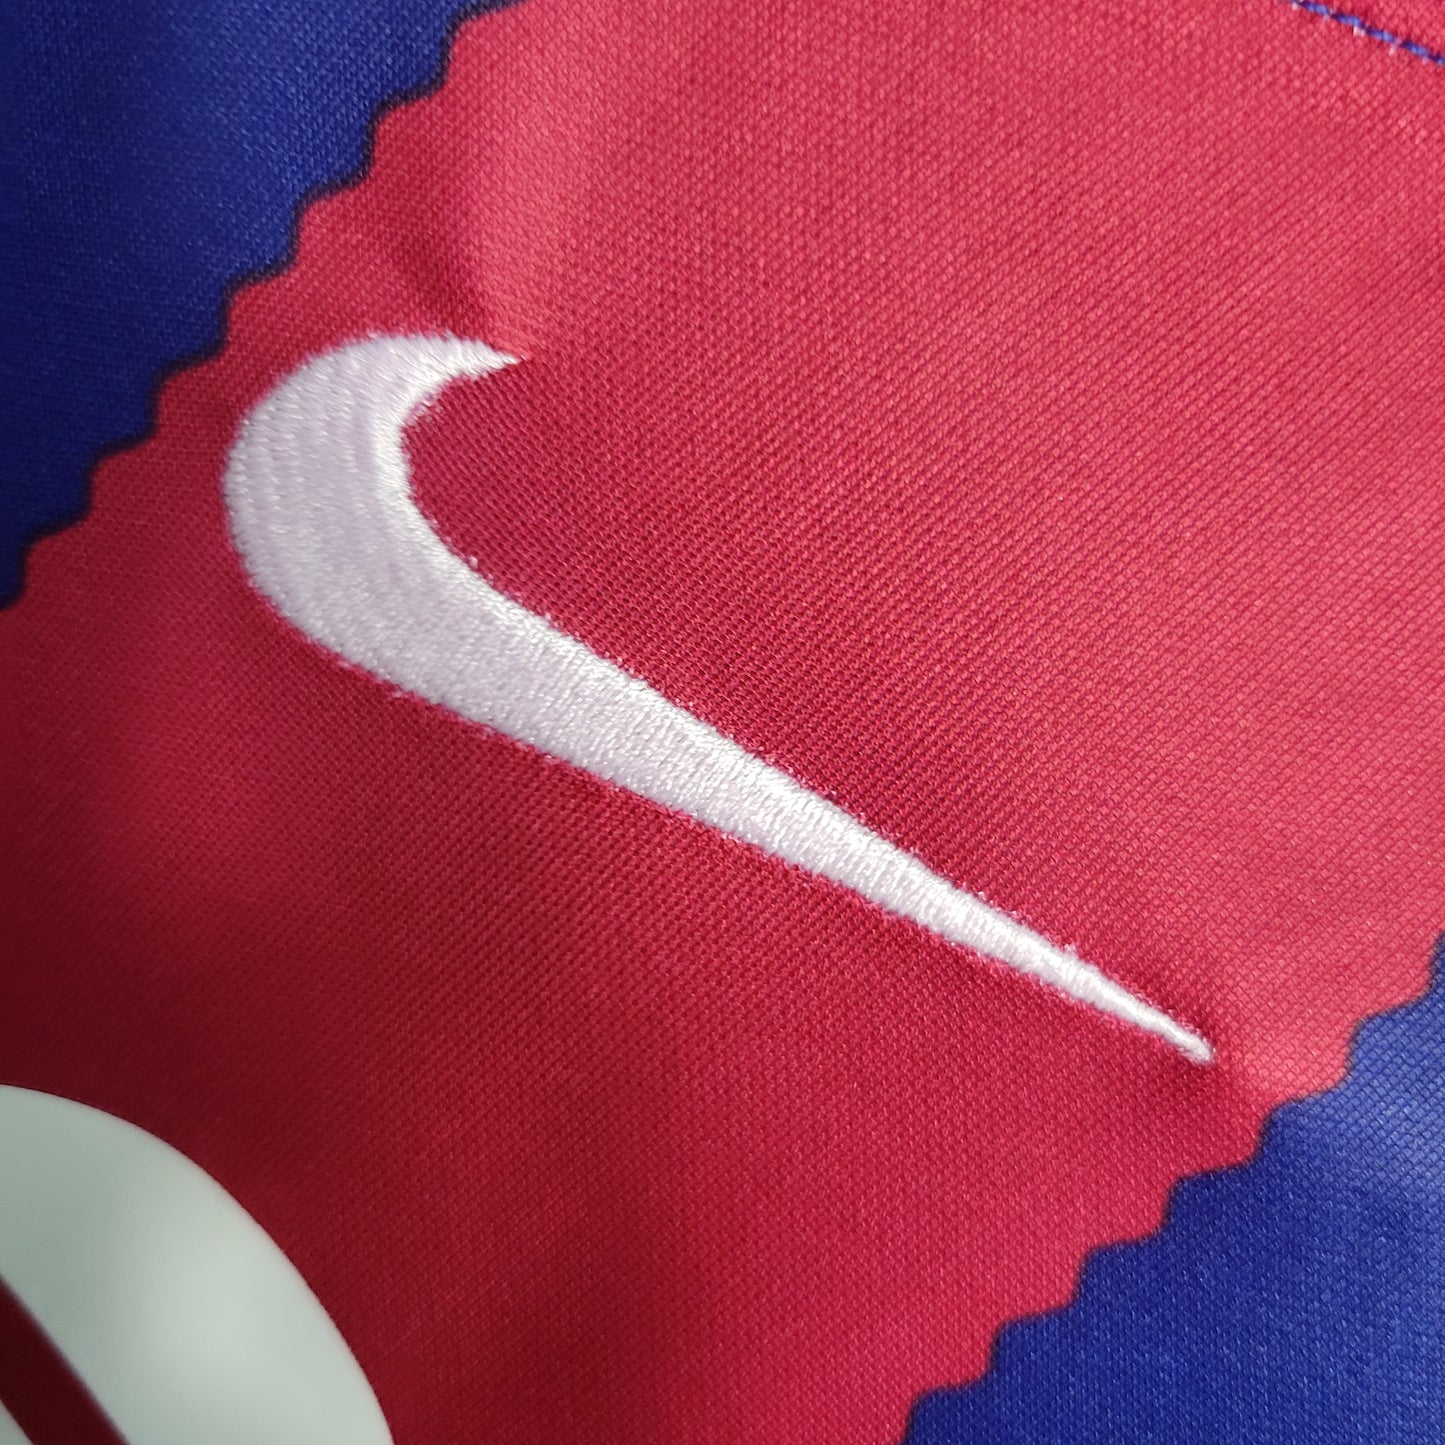 Kit Nike Barcelona I - 2023/24 Infantil